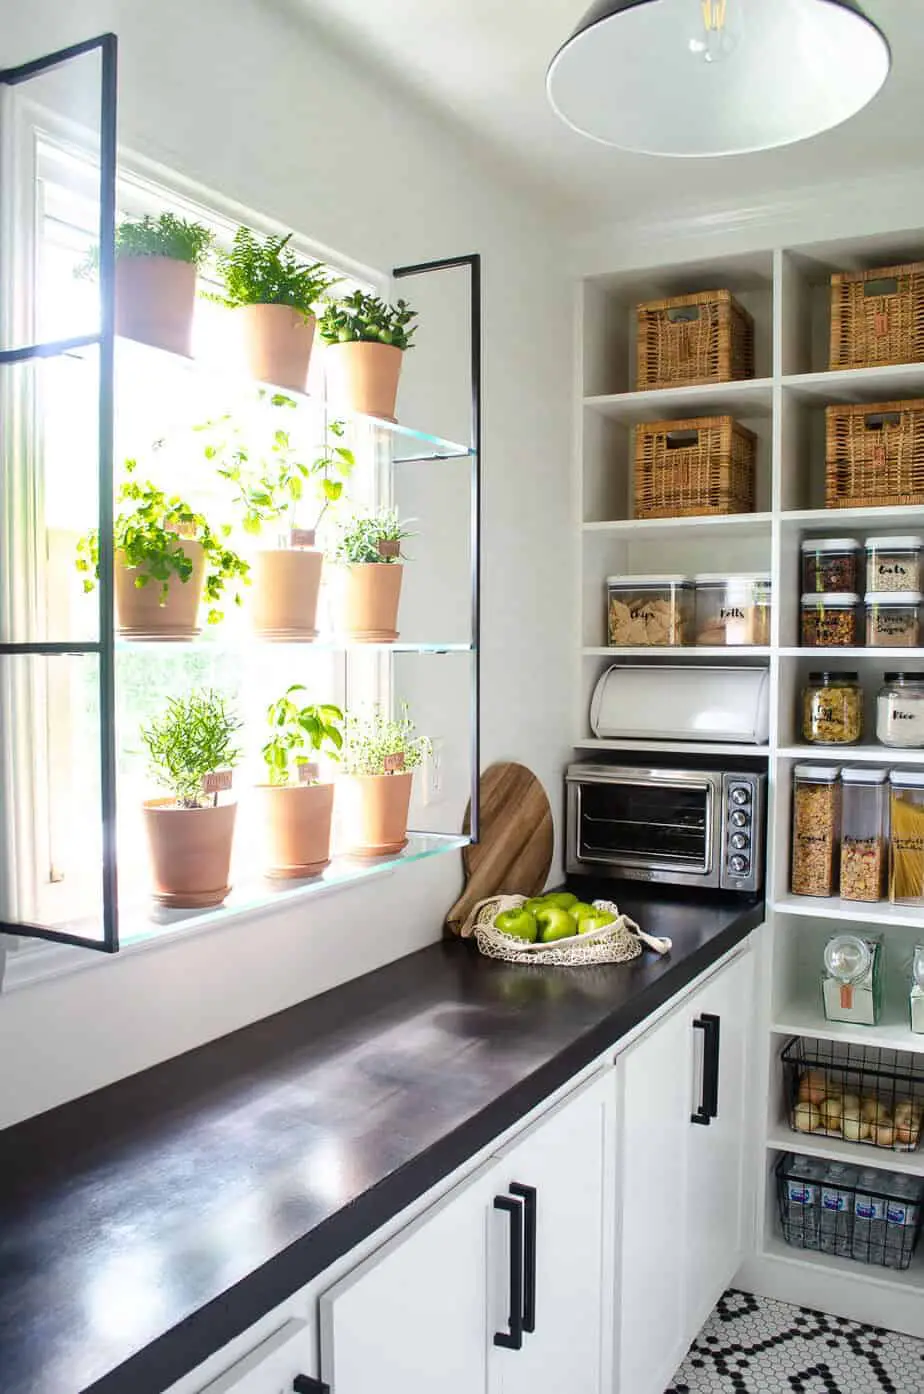 pantry with window herb garden shelf